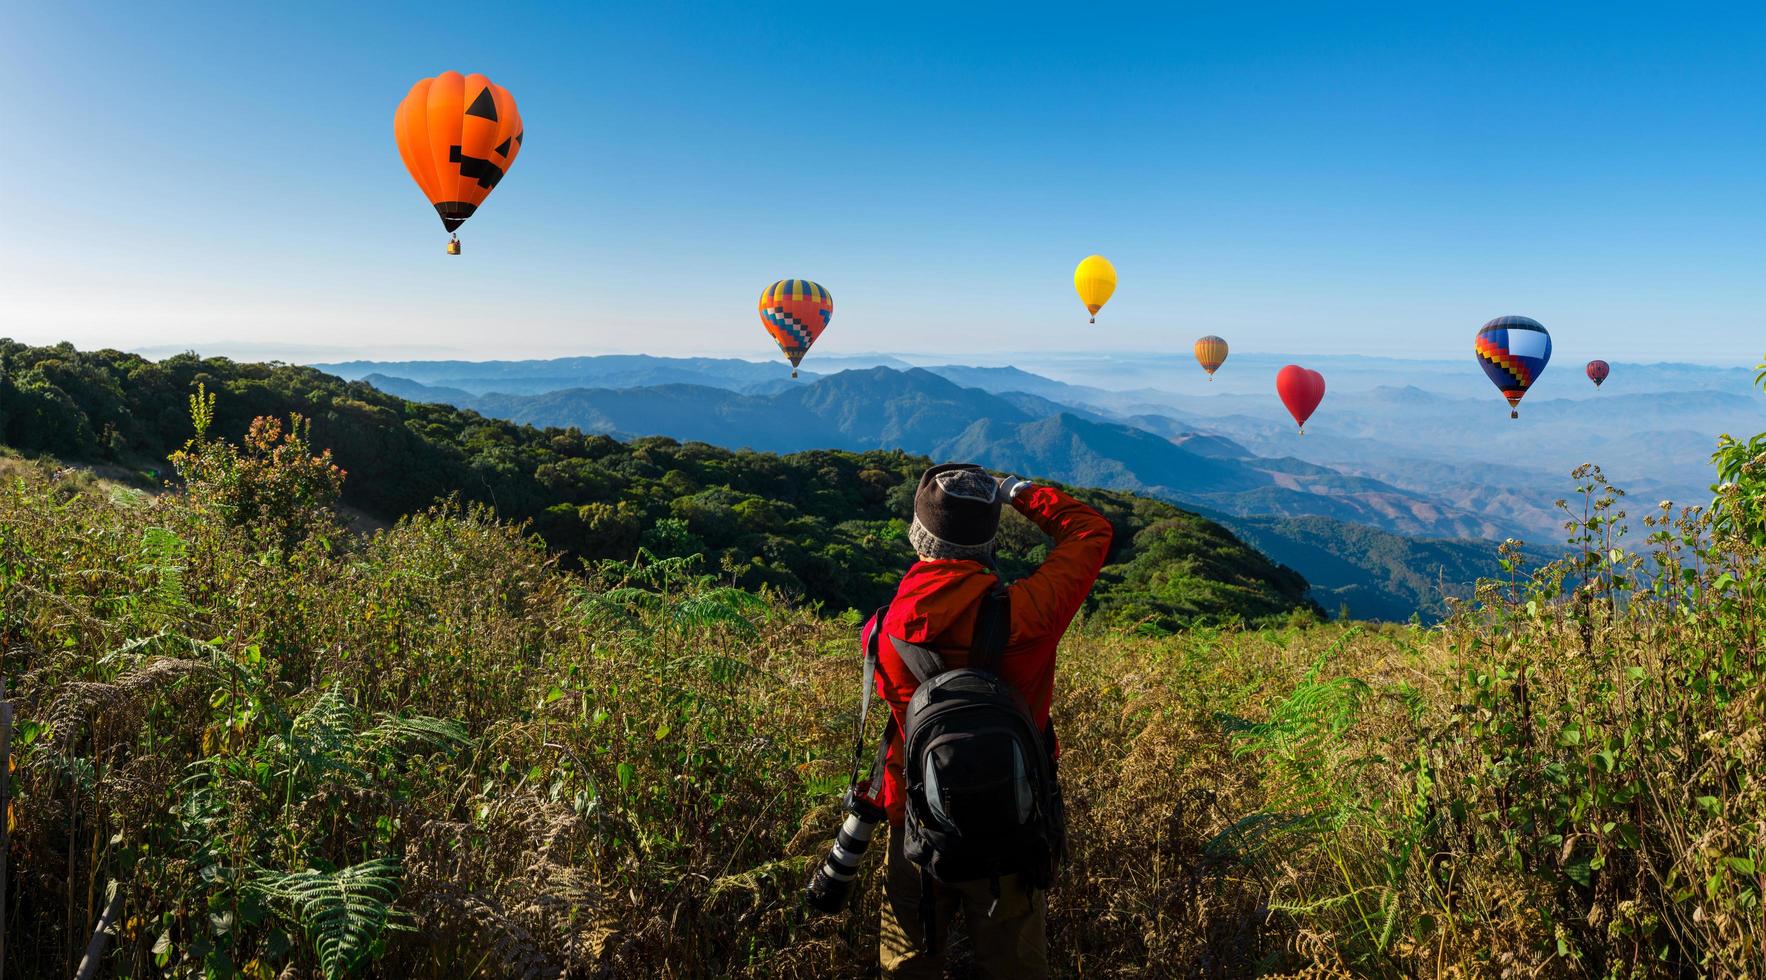 professionele fotograaf maakt landschapsfoto's op een berg met heteluchtballonnen op de achtergrond foto